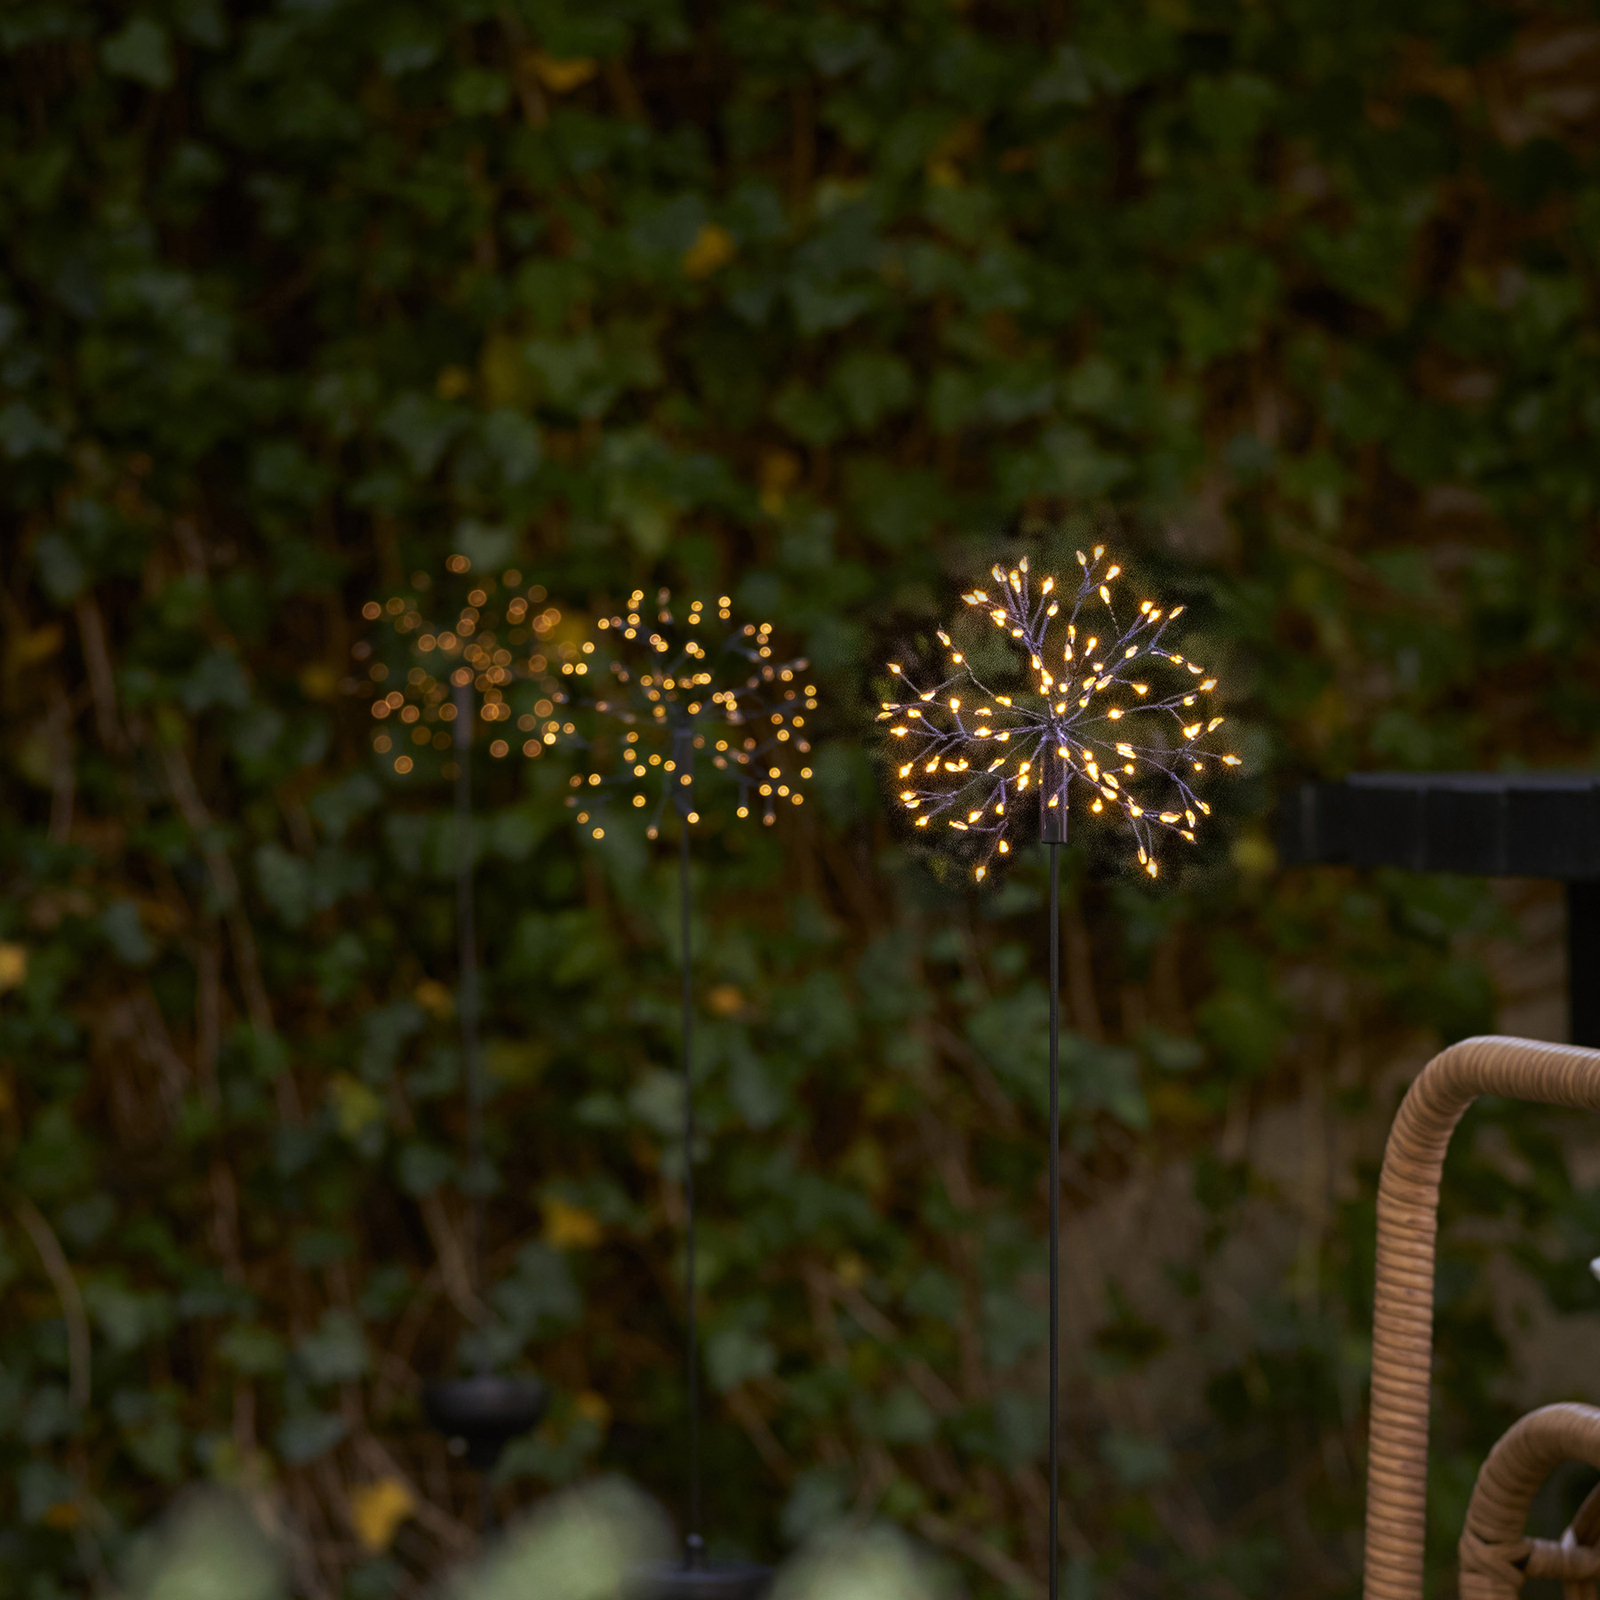 LED solární světlo Firework zapichovací hrot 85 cm